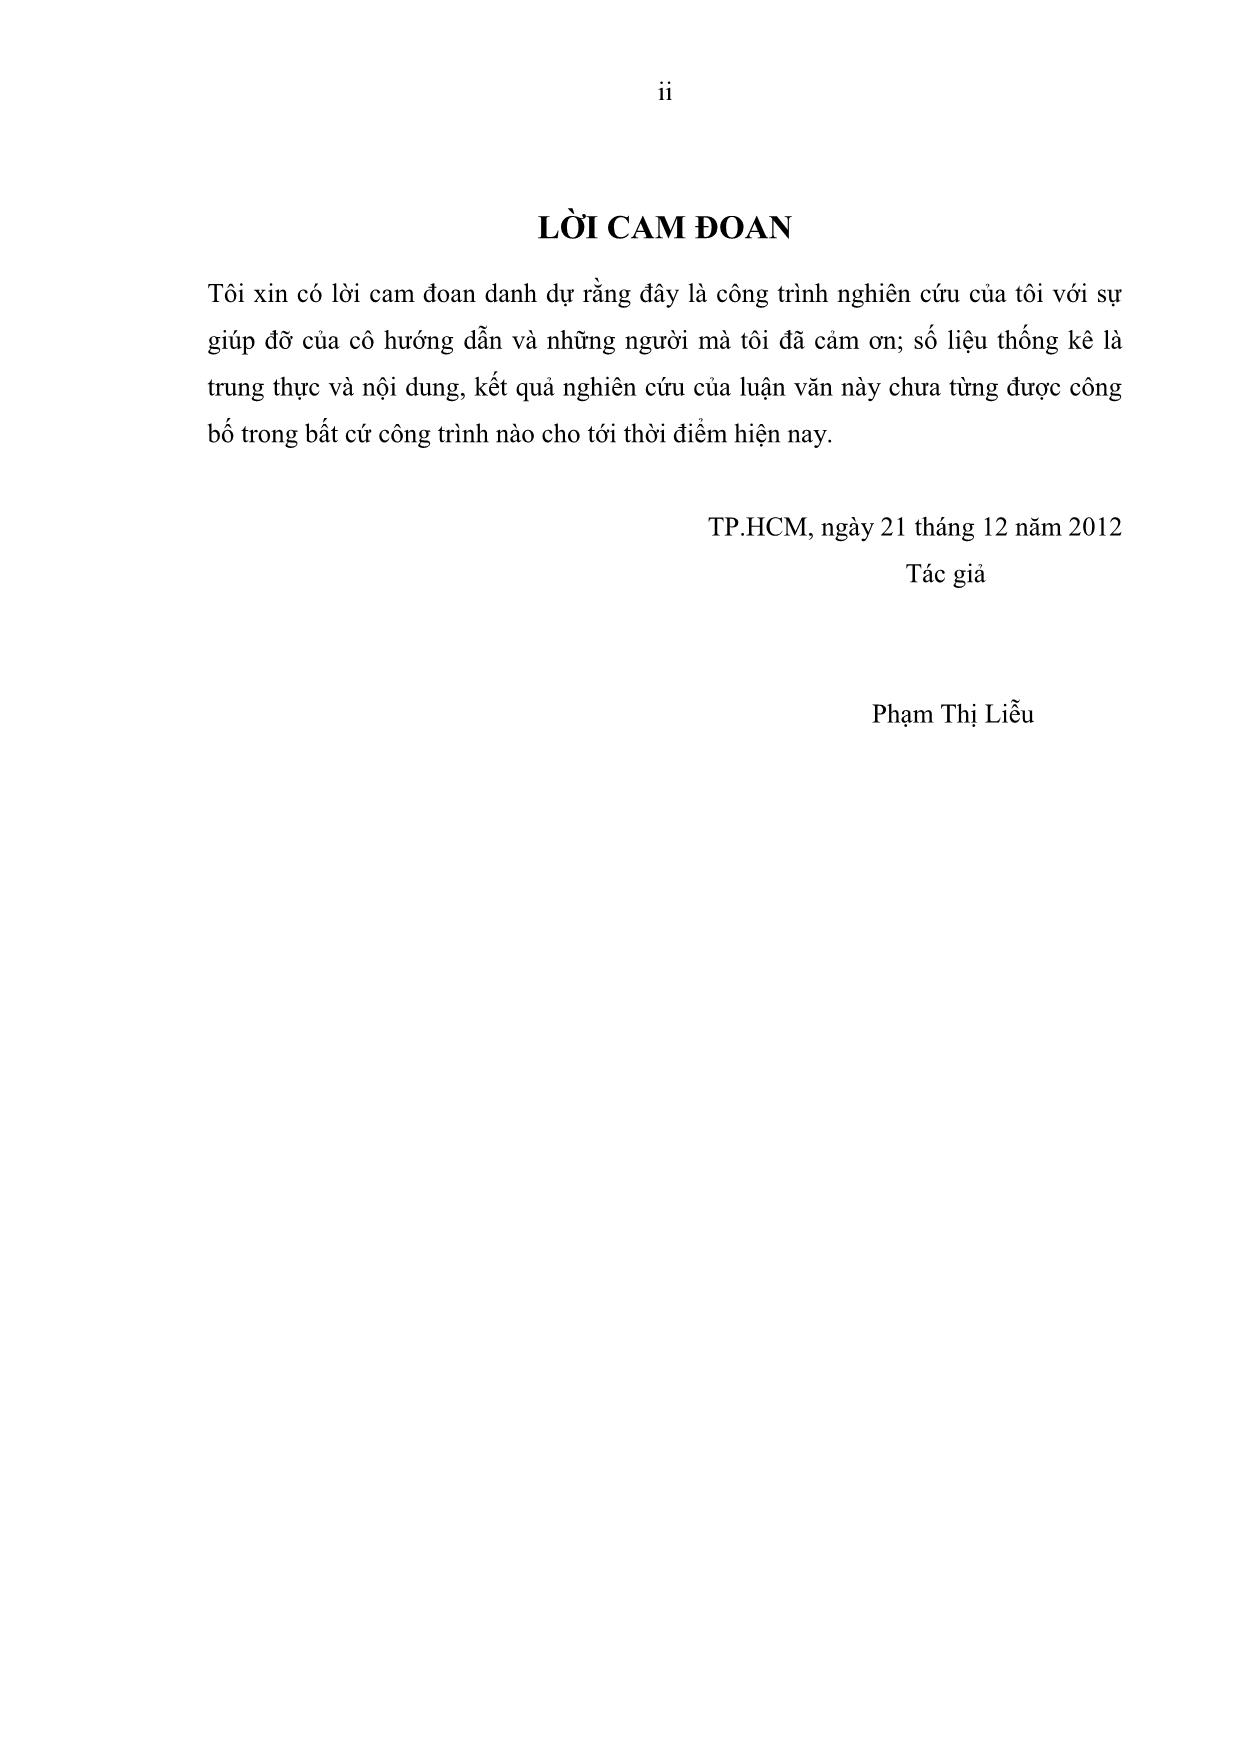 Chính sách tiền tệ và tỷ suất sinh lợi của thị trường chứng khoán Việt Nam trang 4